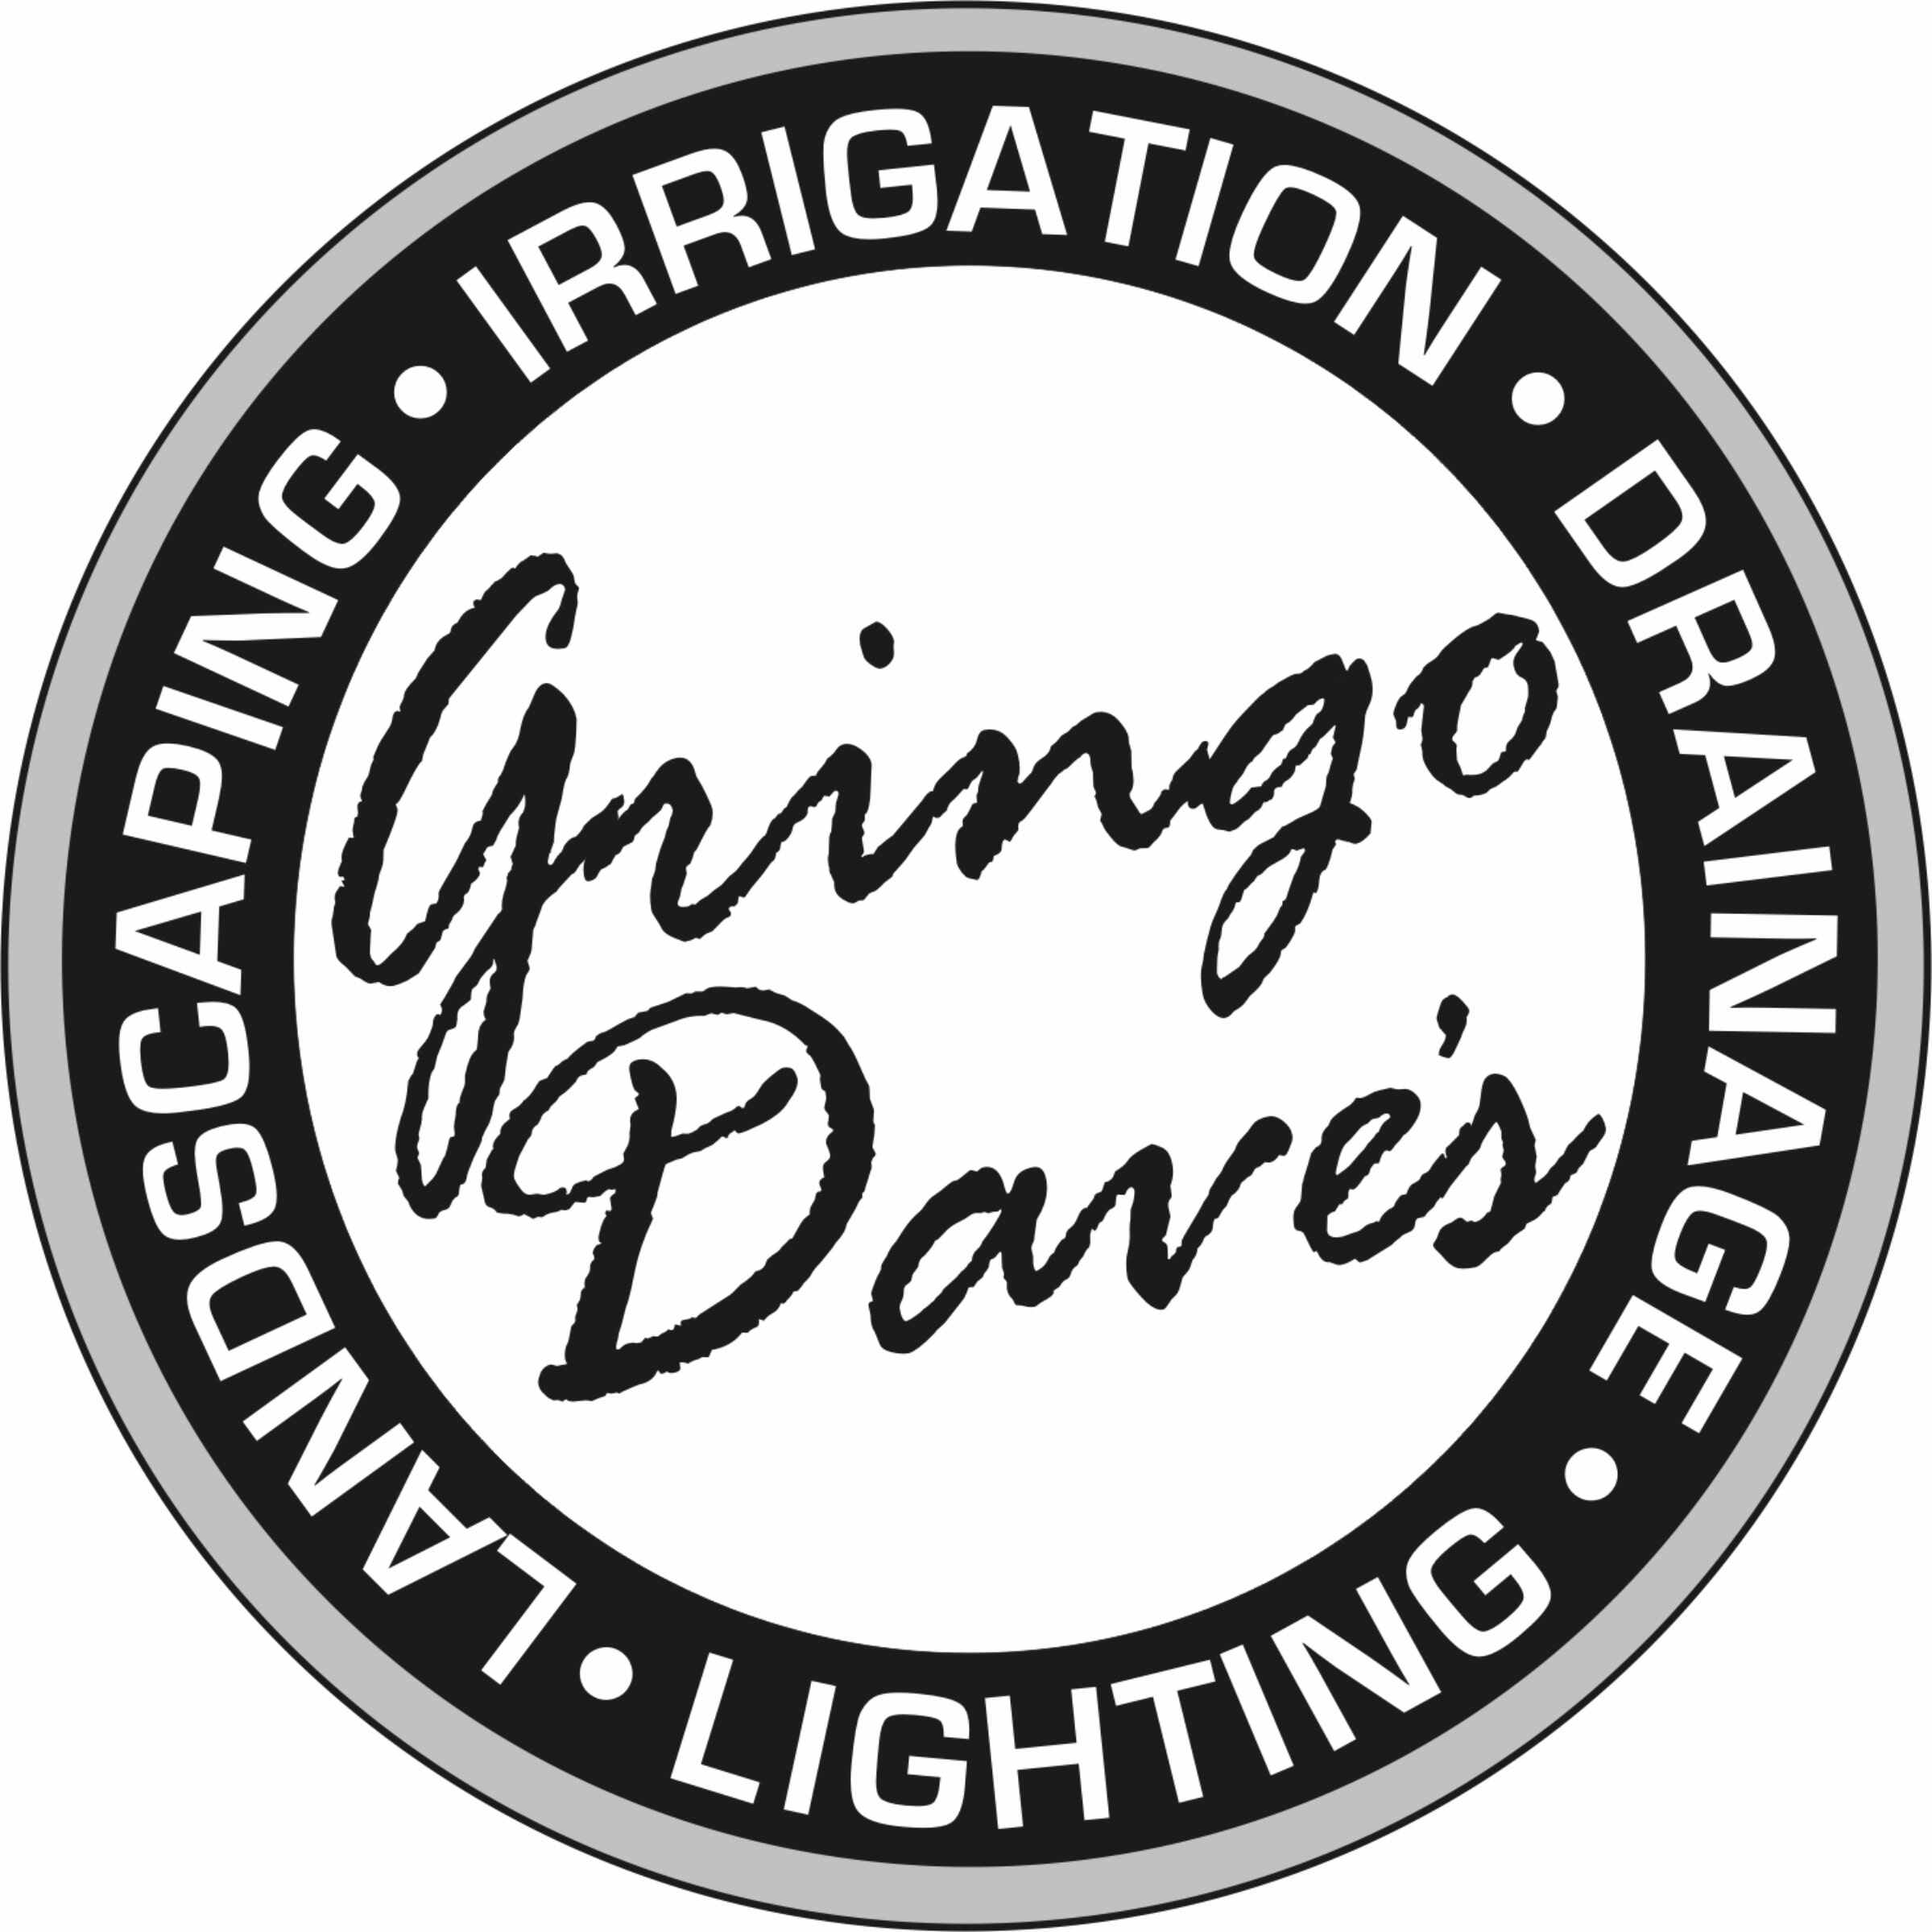 Gringo Dave's Irrigation & Landscaping - Redding, CA - (530)244-7130 | ShowMeLocal.com